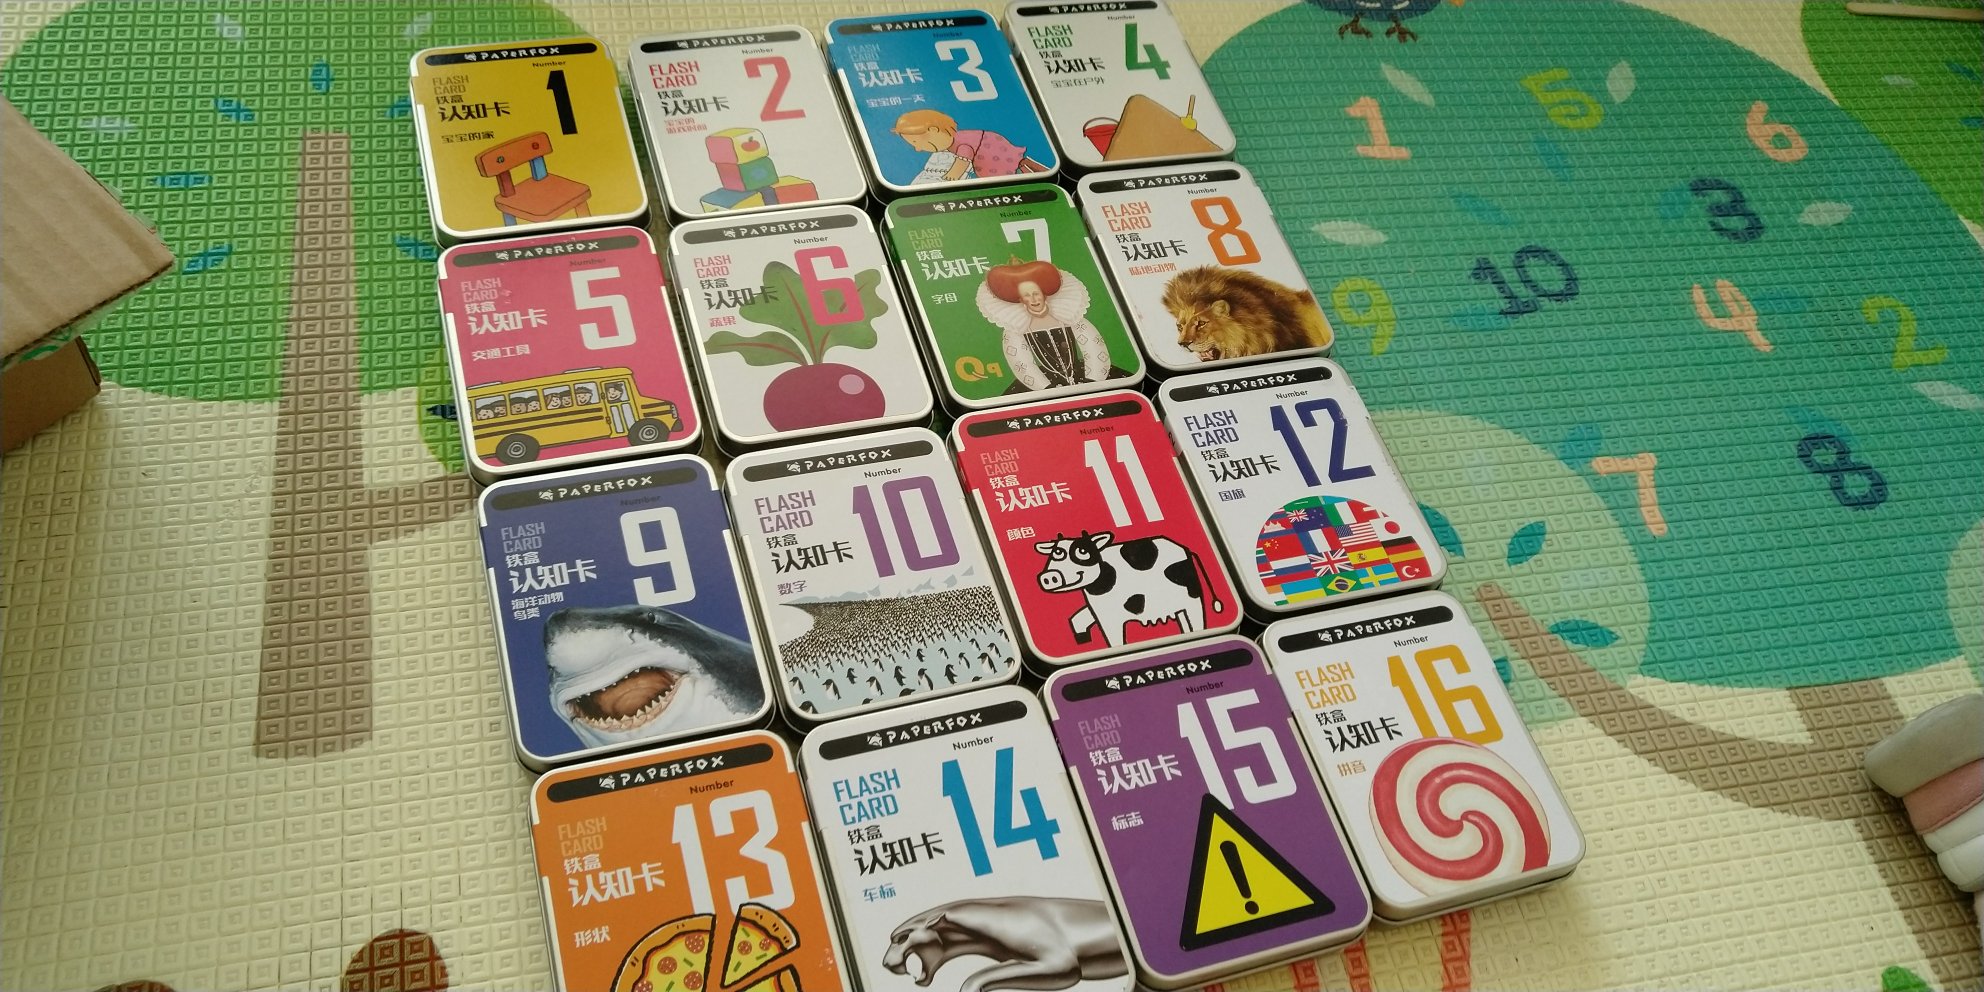 颜值比较高的认知卡~宝宝可以边玩边学~还有拼音卡，用到学前班不是问题啦！